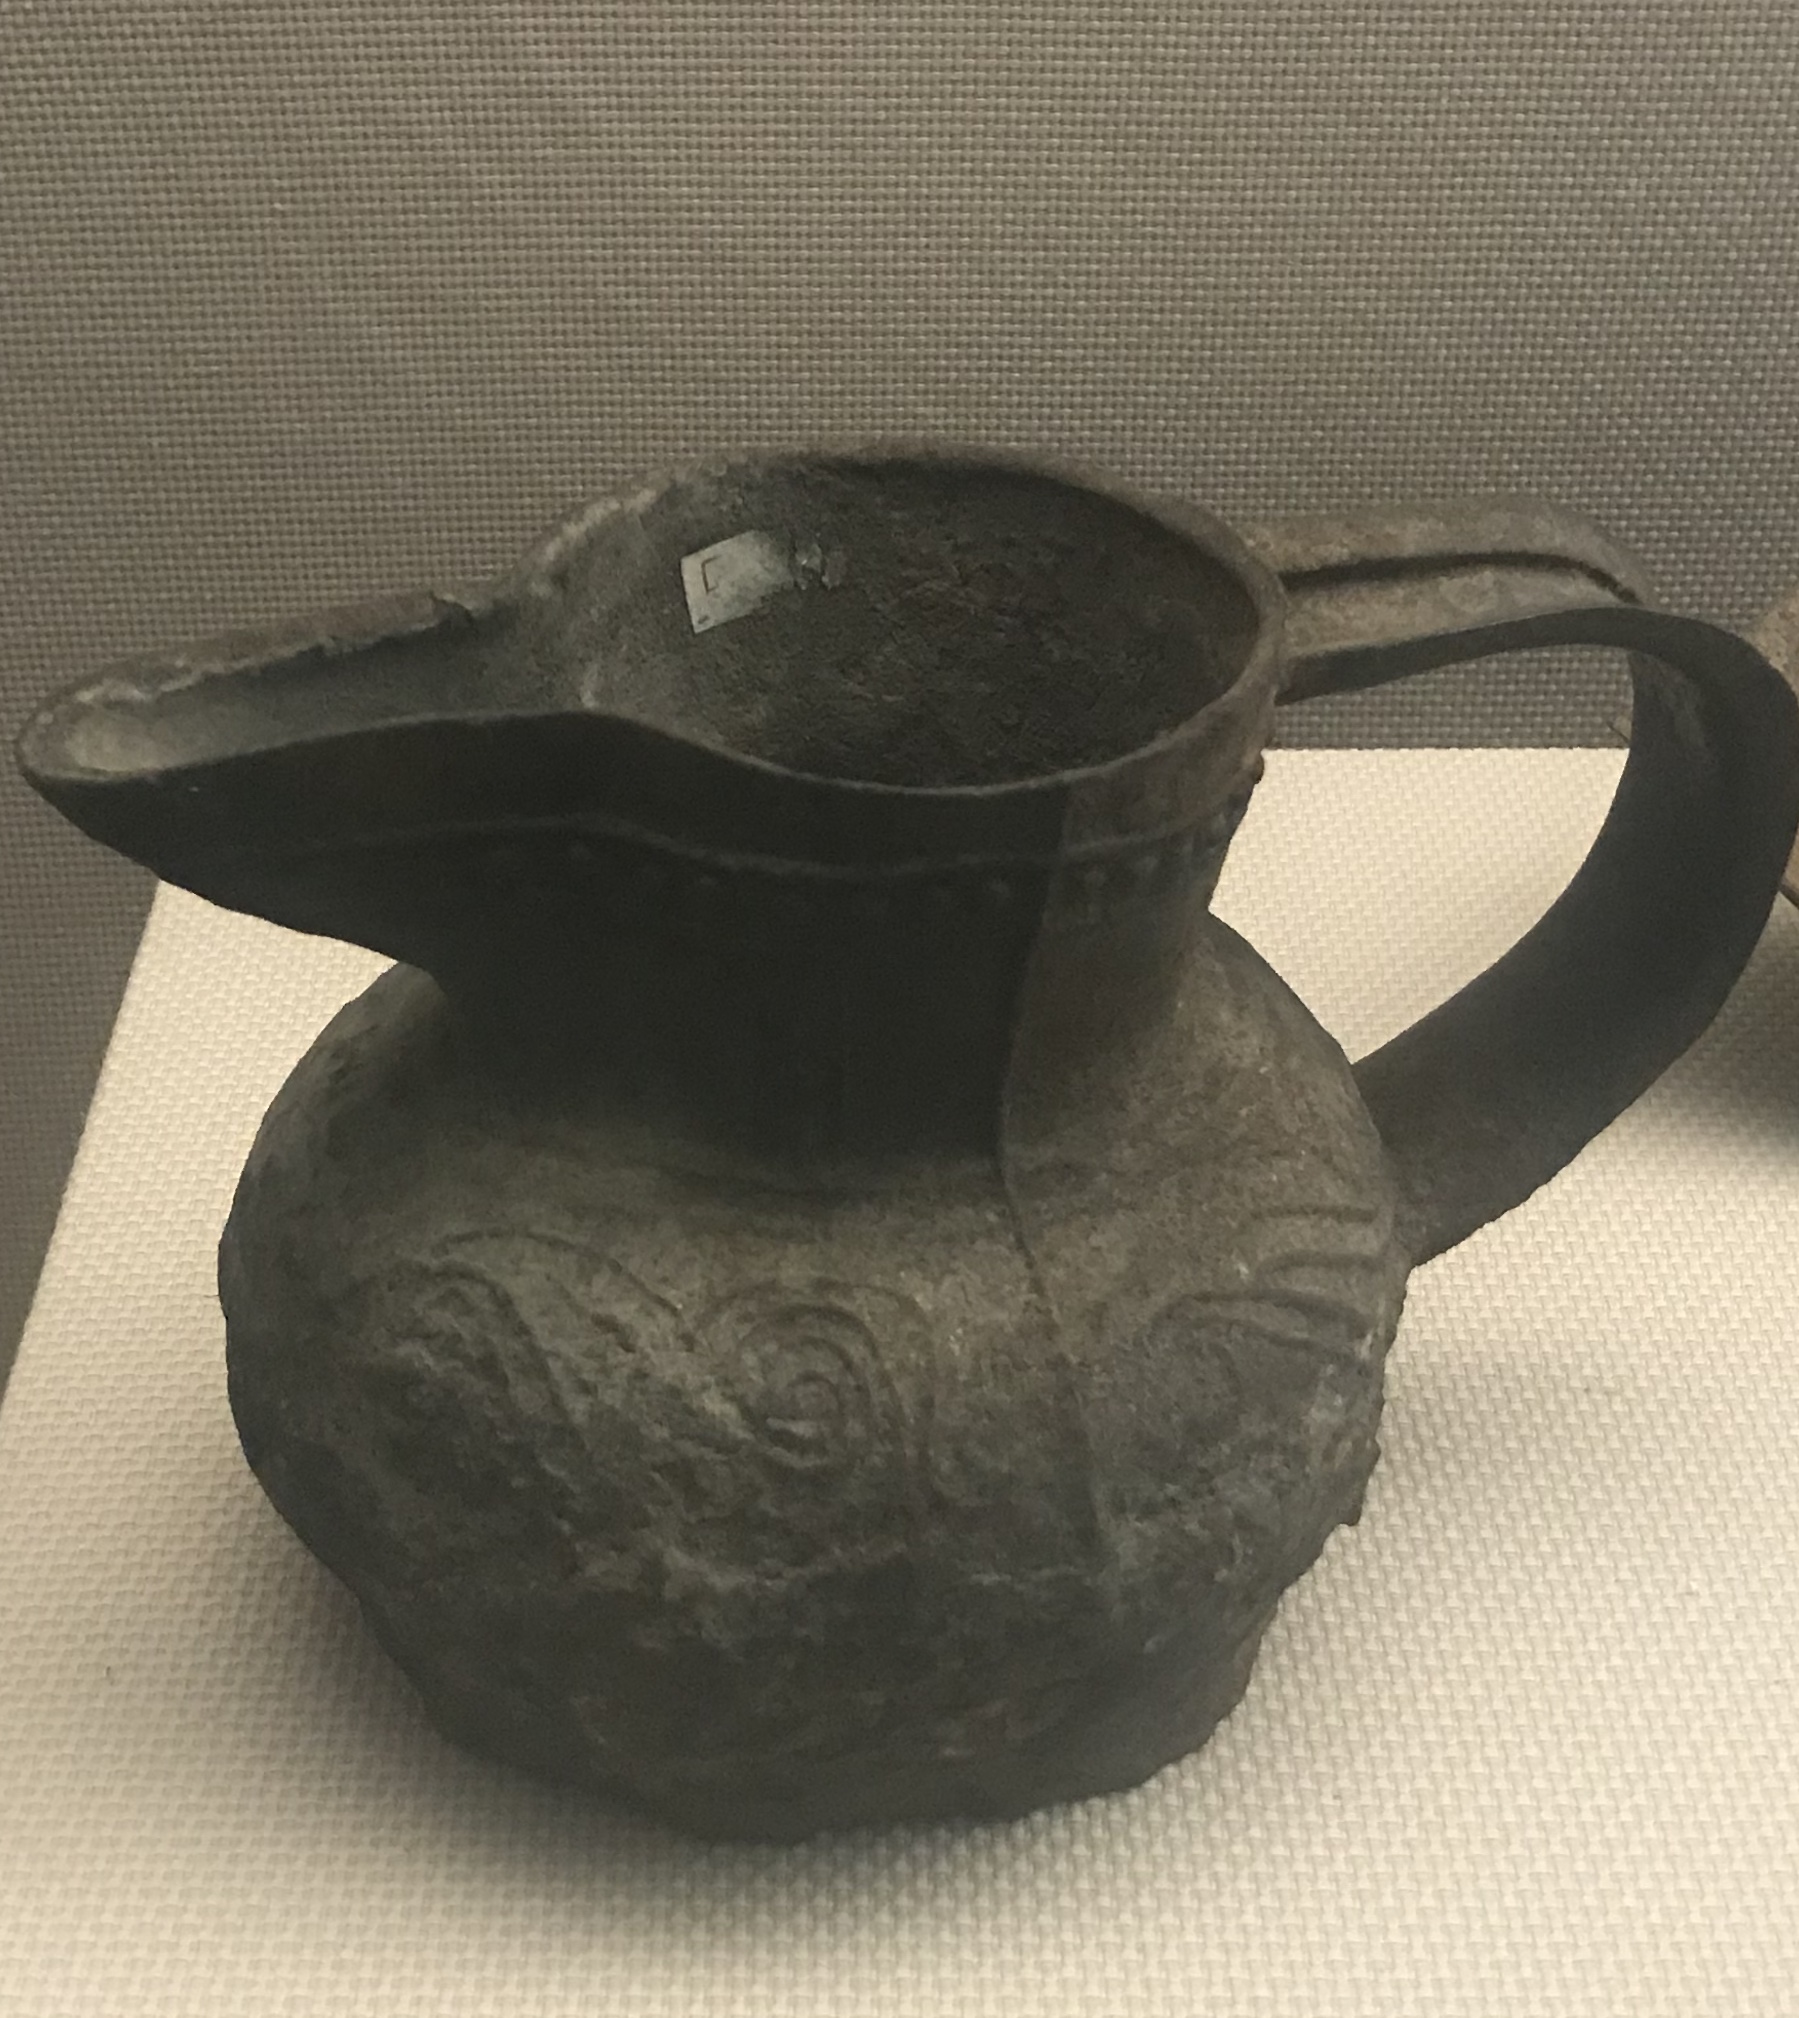 鉄鍋鏟-鉄茶罐-チャン族生活用品-四川民族文物館-四川博物館-成都